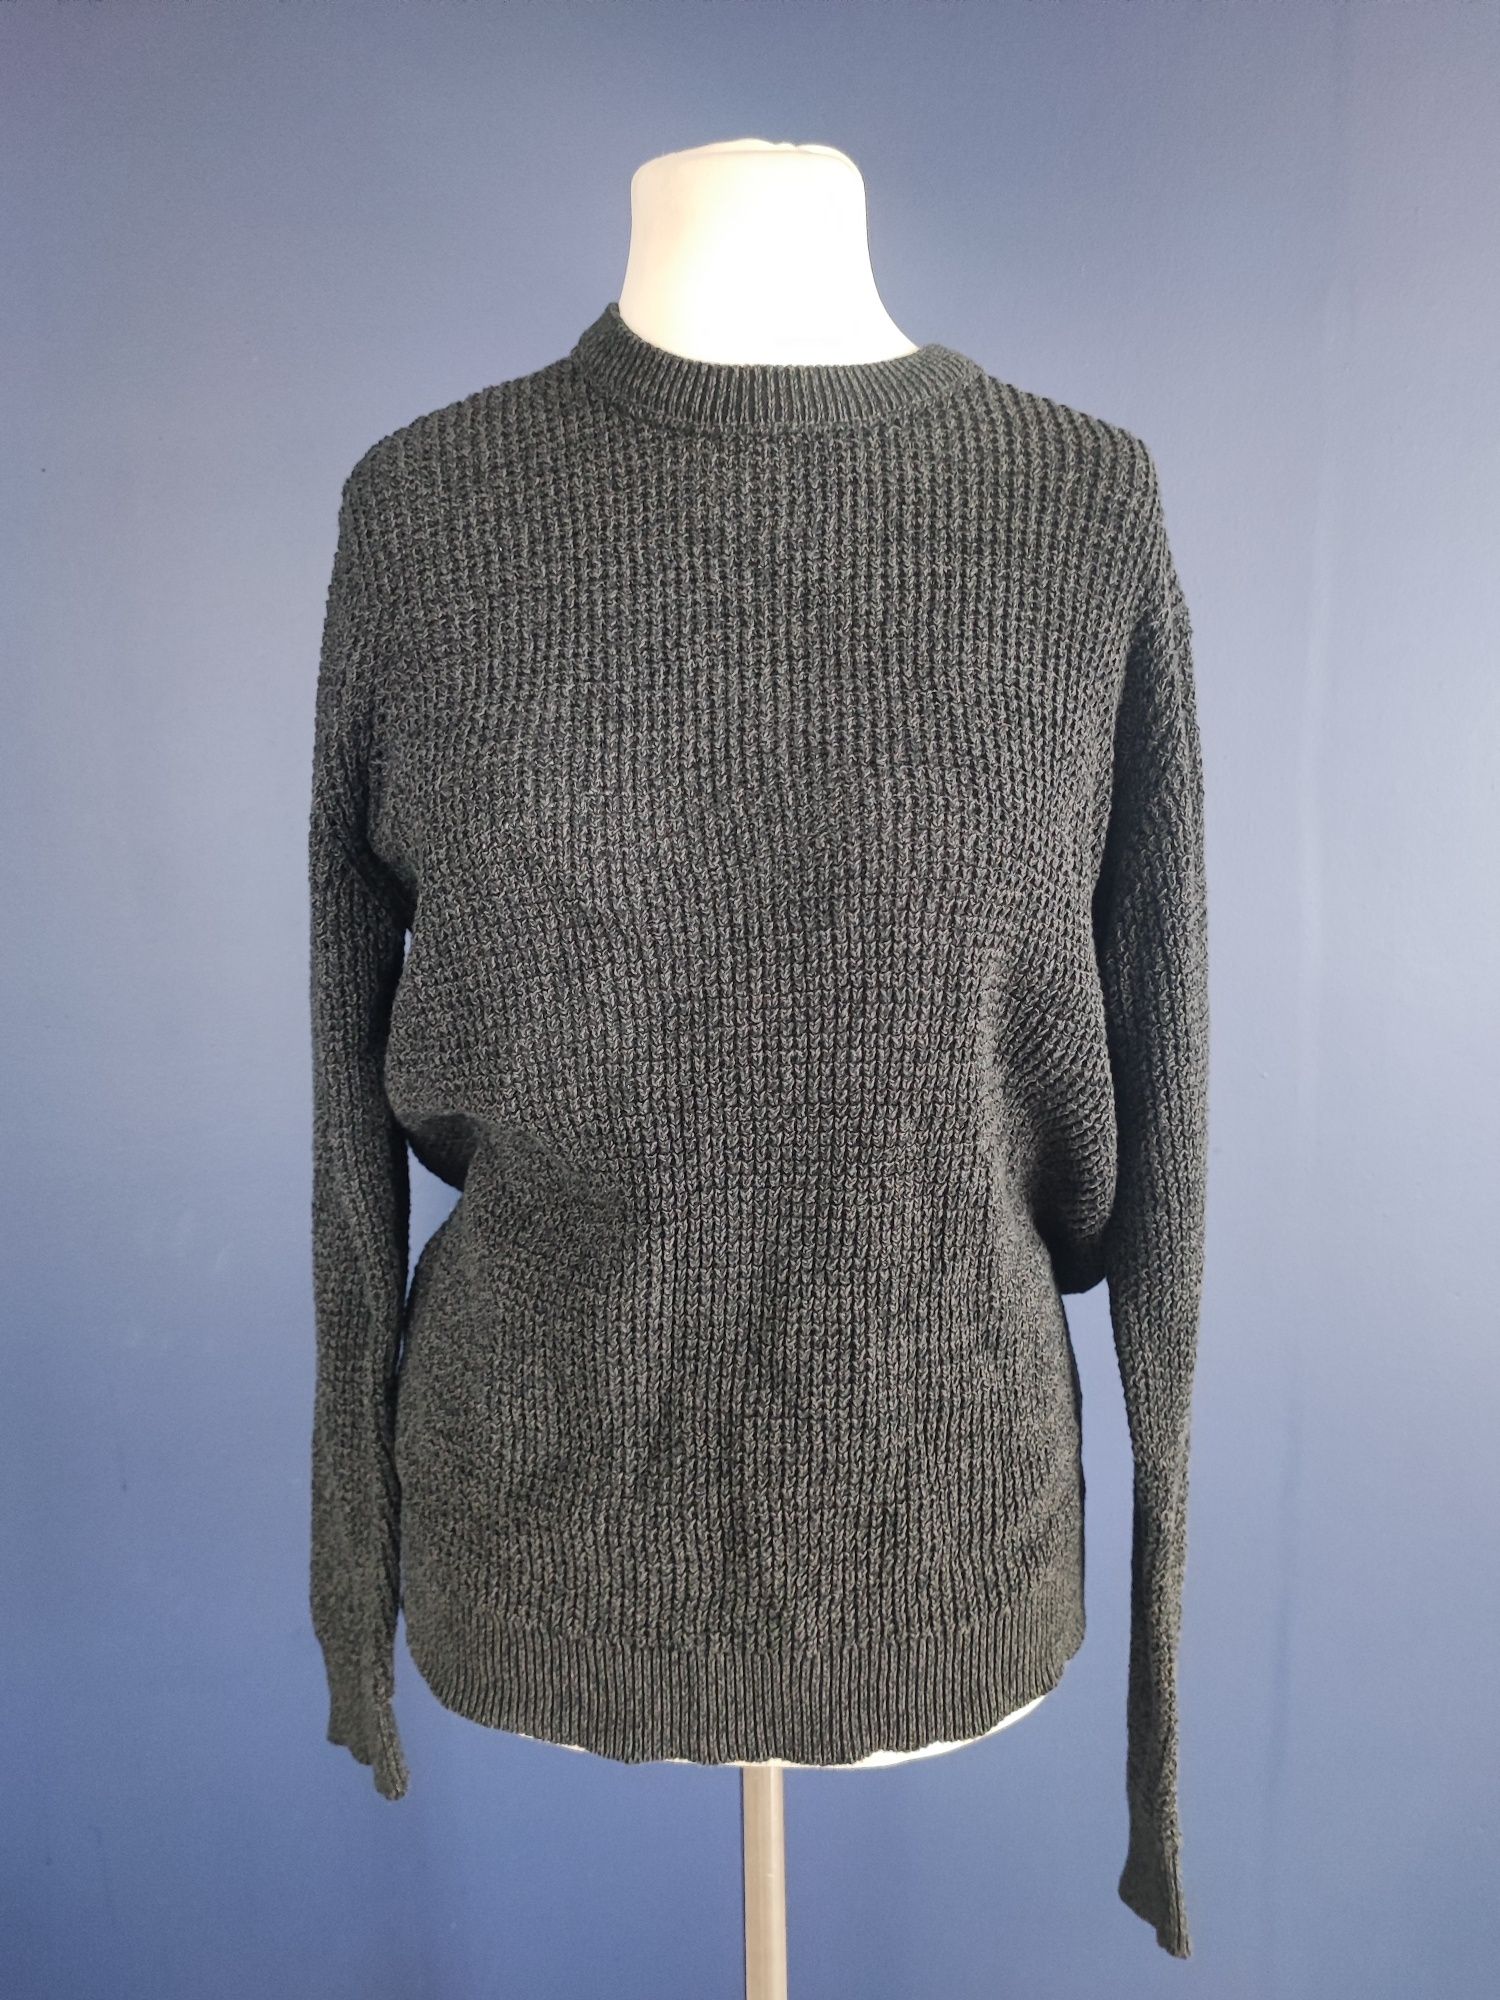 3404. Primark sweter pleciony 42 XL yessica
Rozmiar 34 XS
Długość cał